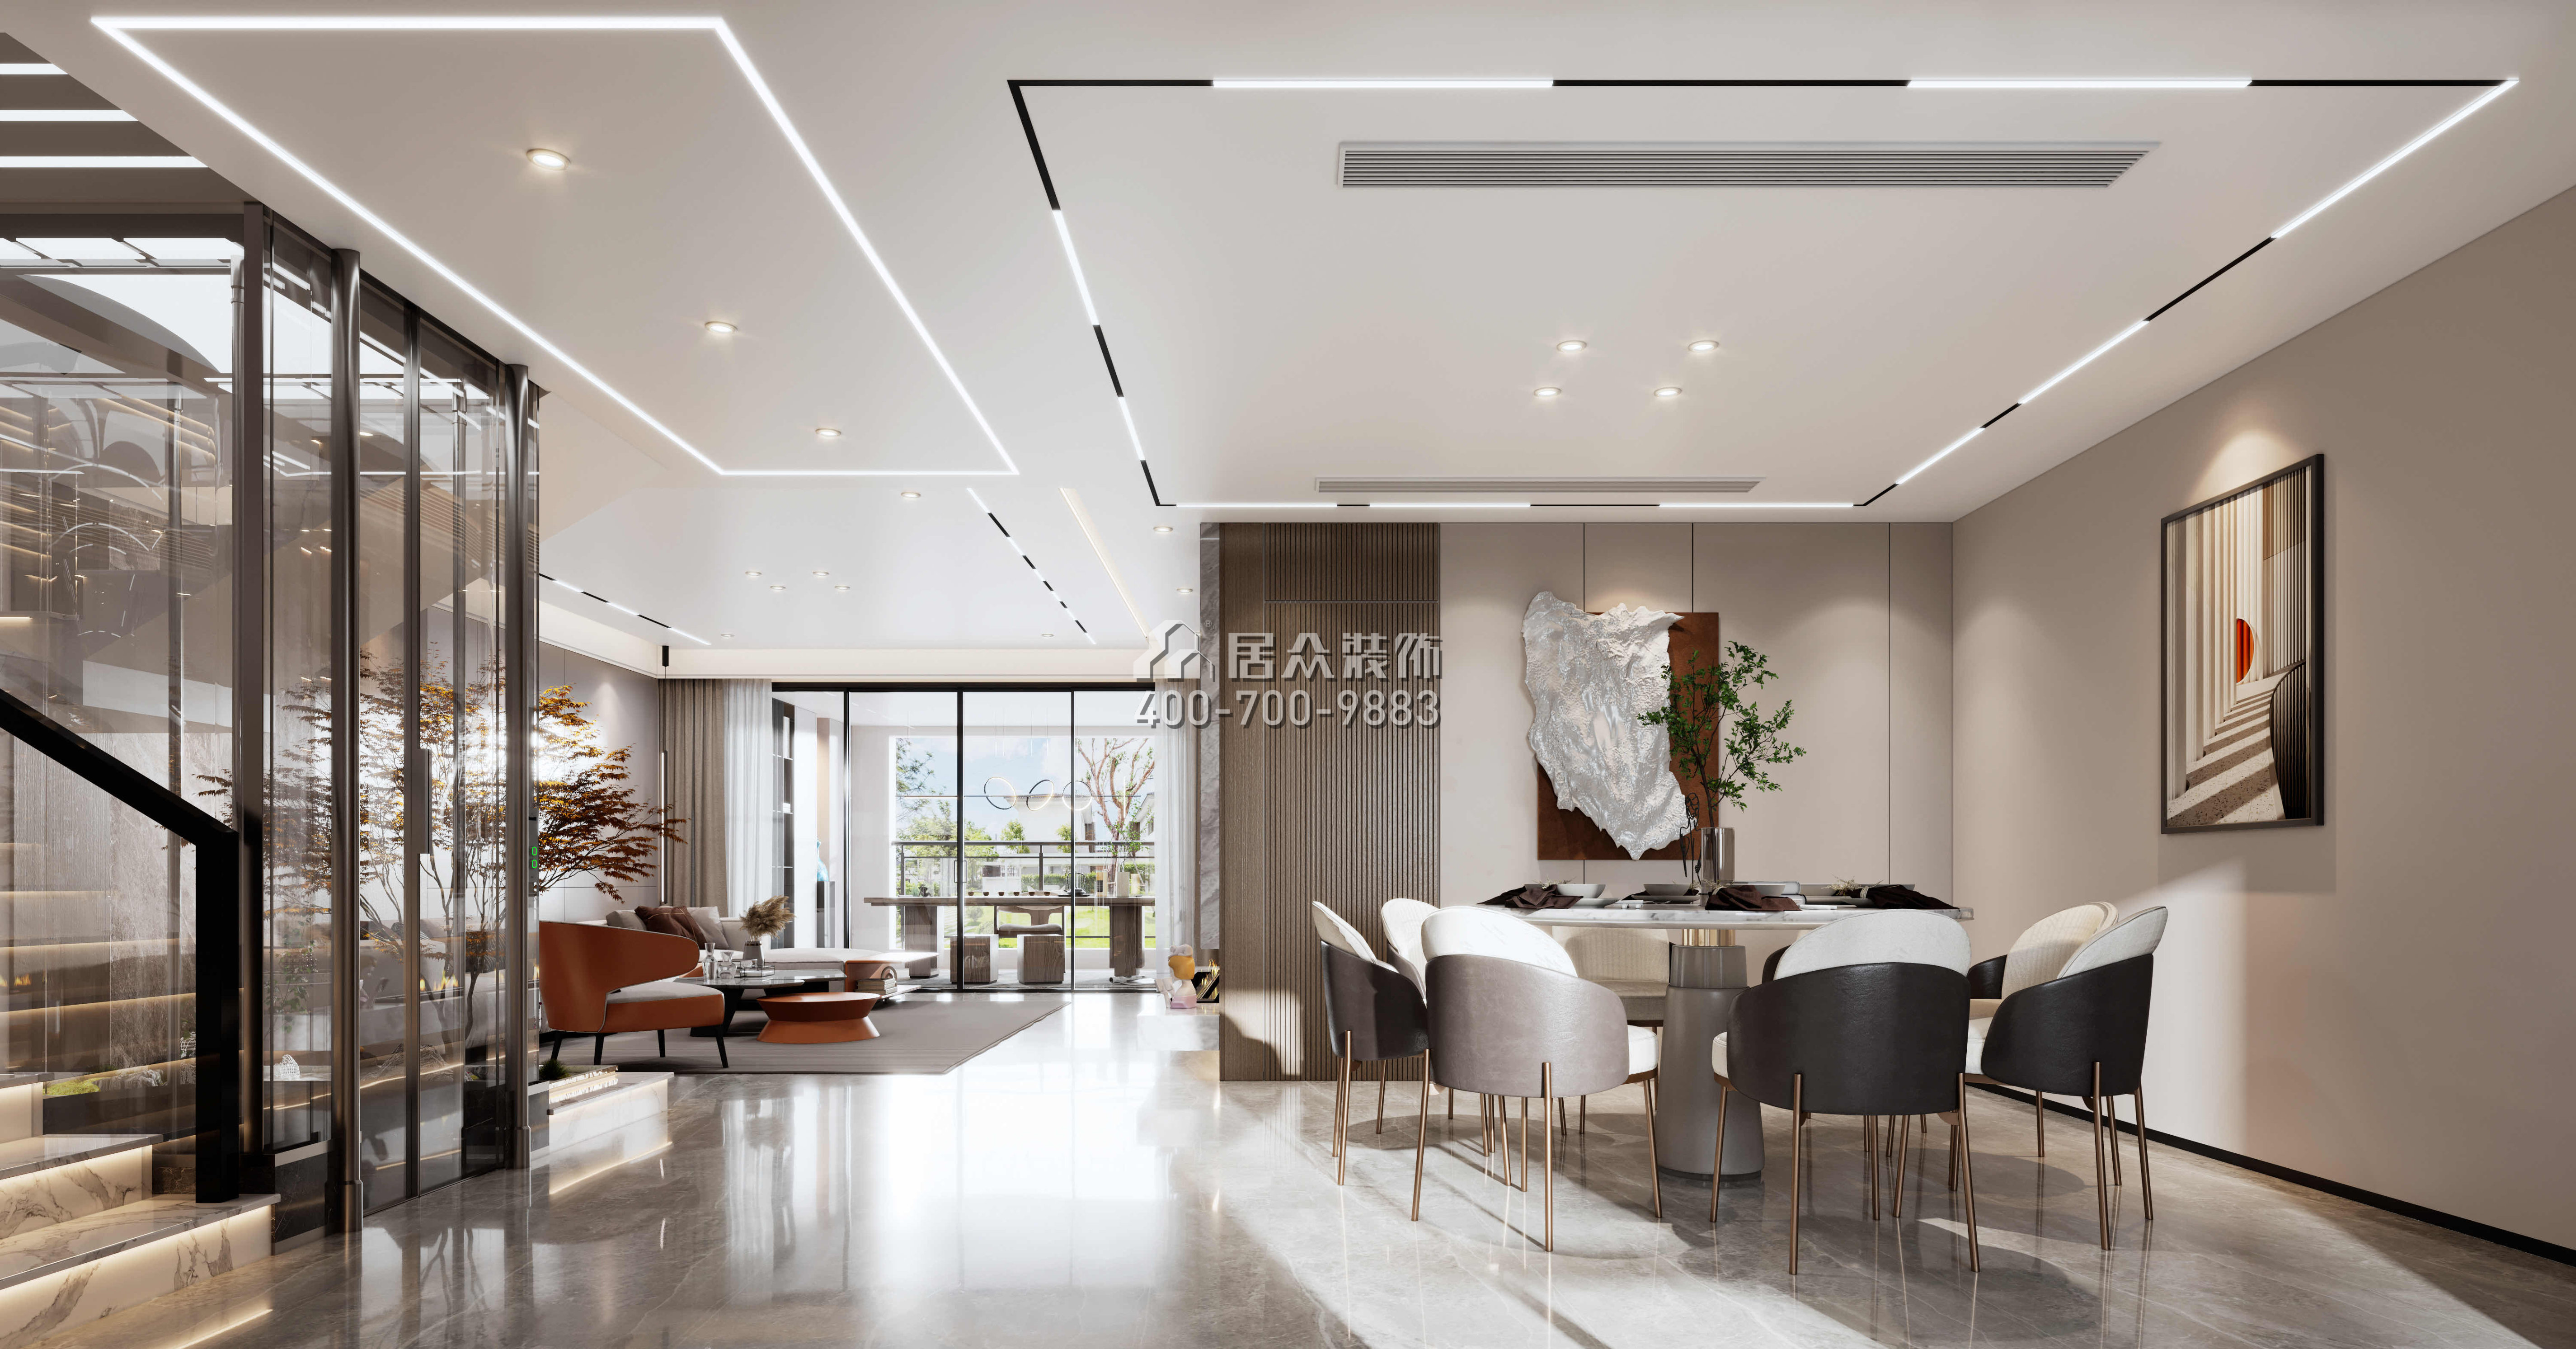 金天地悦湾450平方米现代简约风格叠墅户型餐厅装修效果图